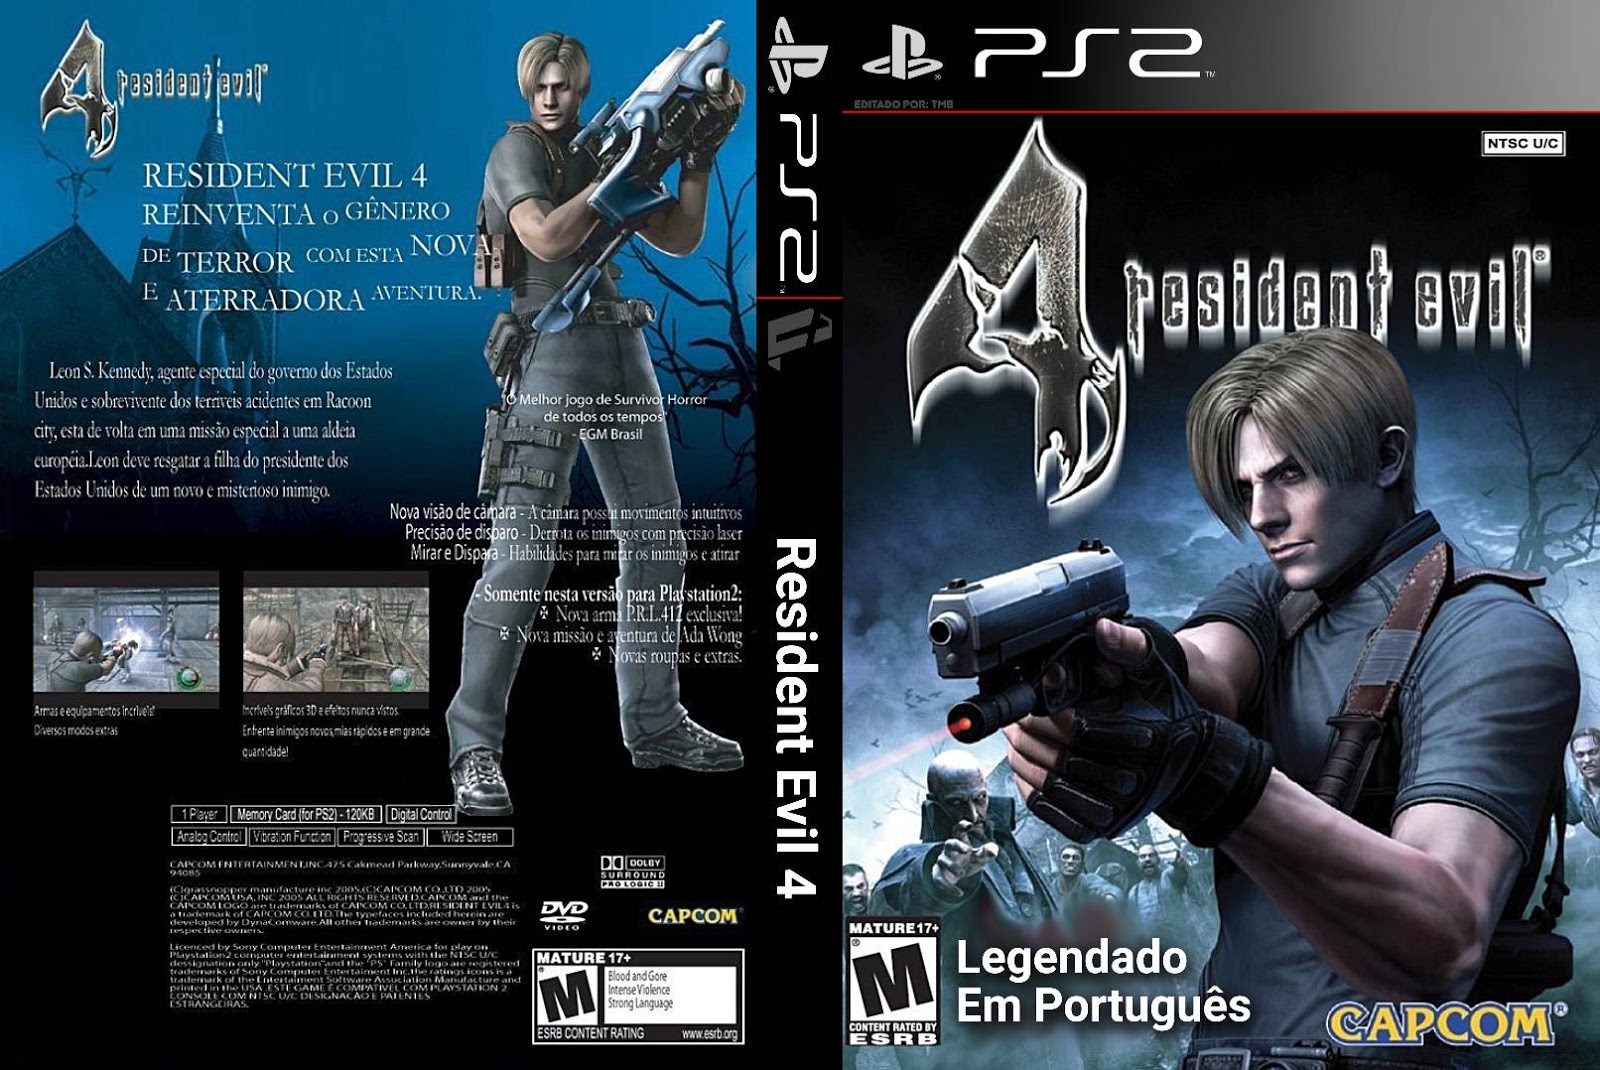 Резидент на пс 2. Диск PLAYSTATION 2 Resident Evil 4. Диски Resident Evil для PLAYSTATION 2. Resident Evil 4 ps4 диск. Resident Evil 2 пс4 диск.